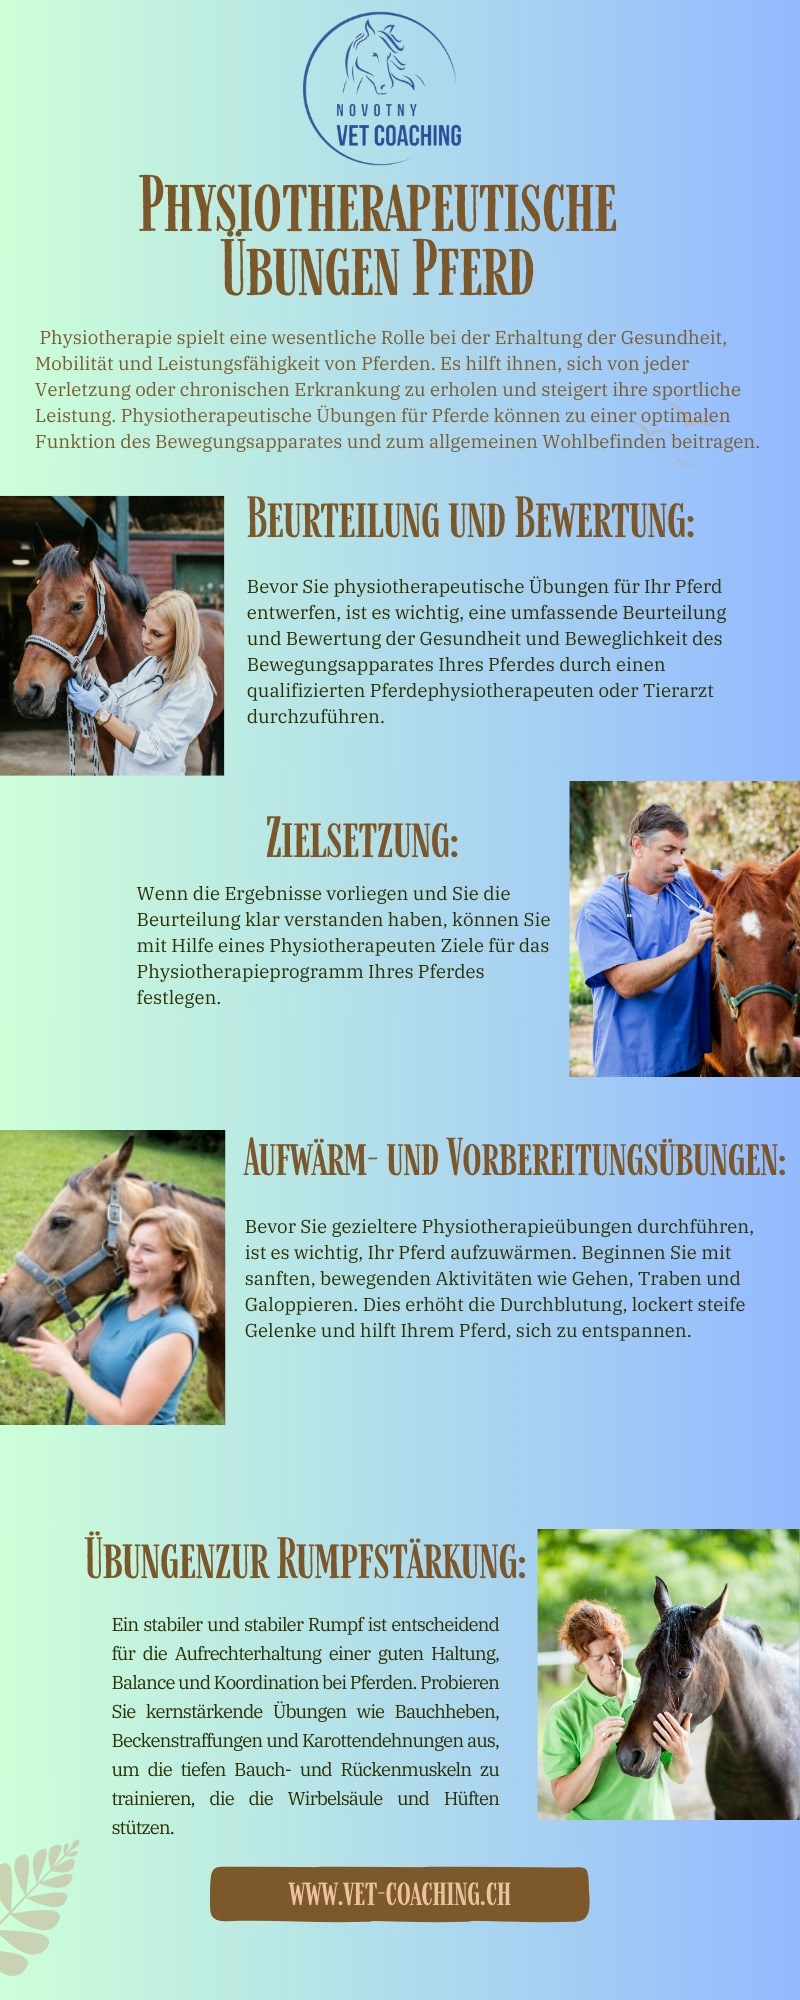 horses veterinary Treatment